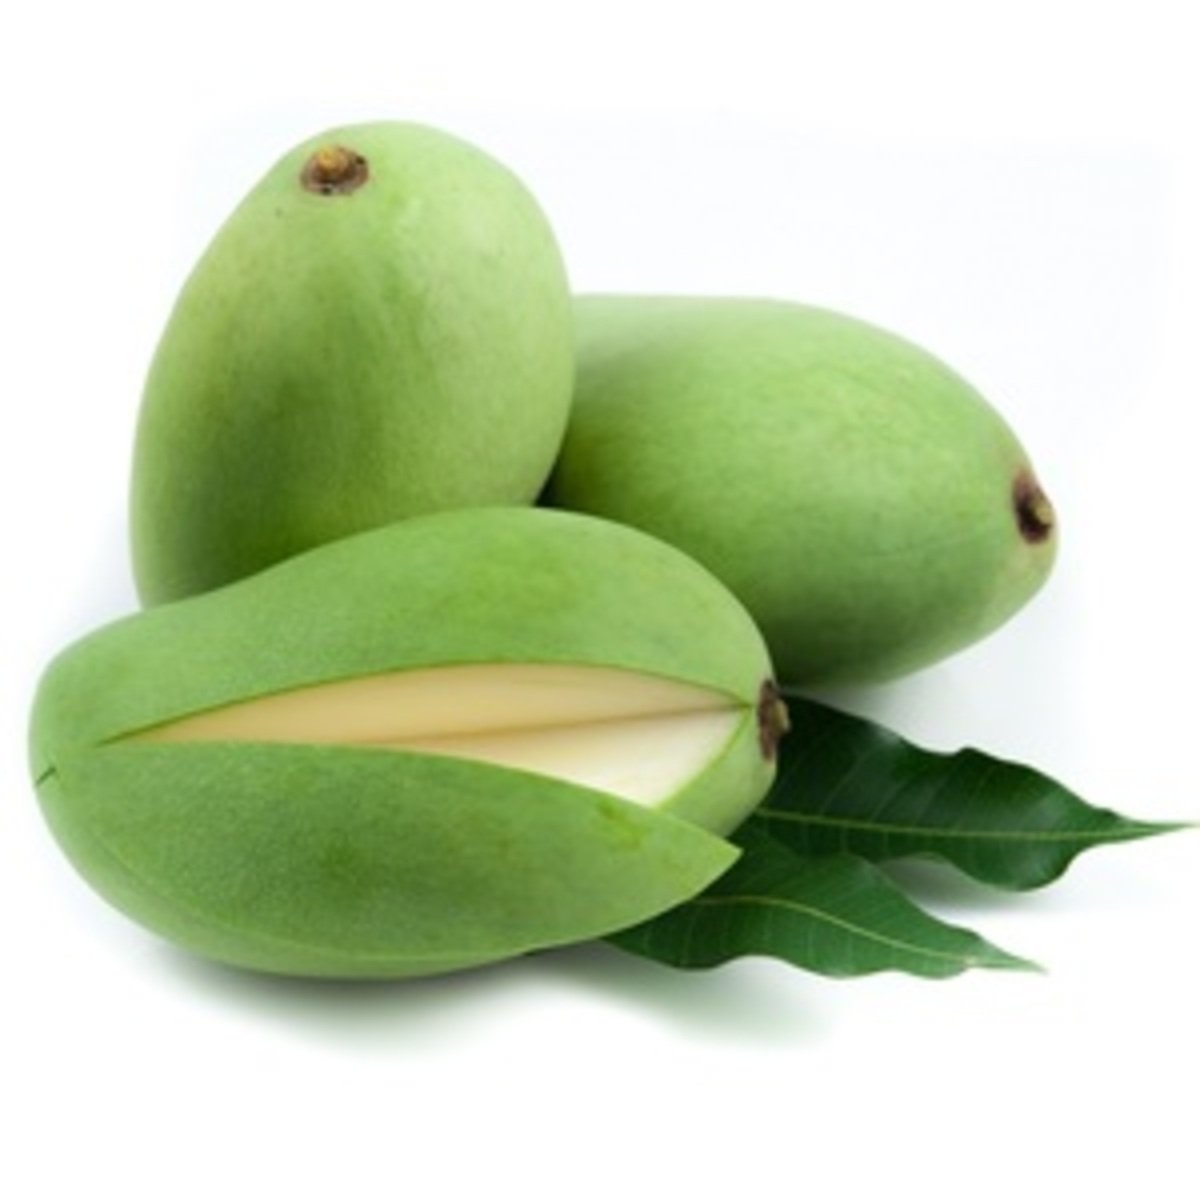 Green Mango 1Kg Approx Weight